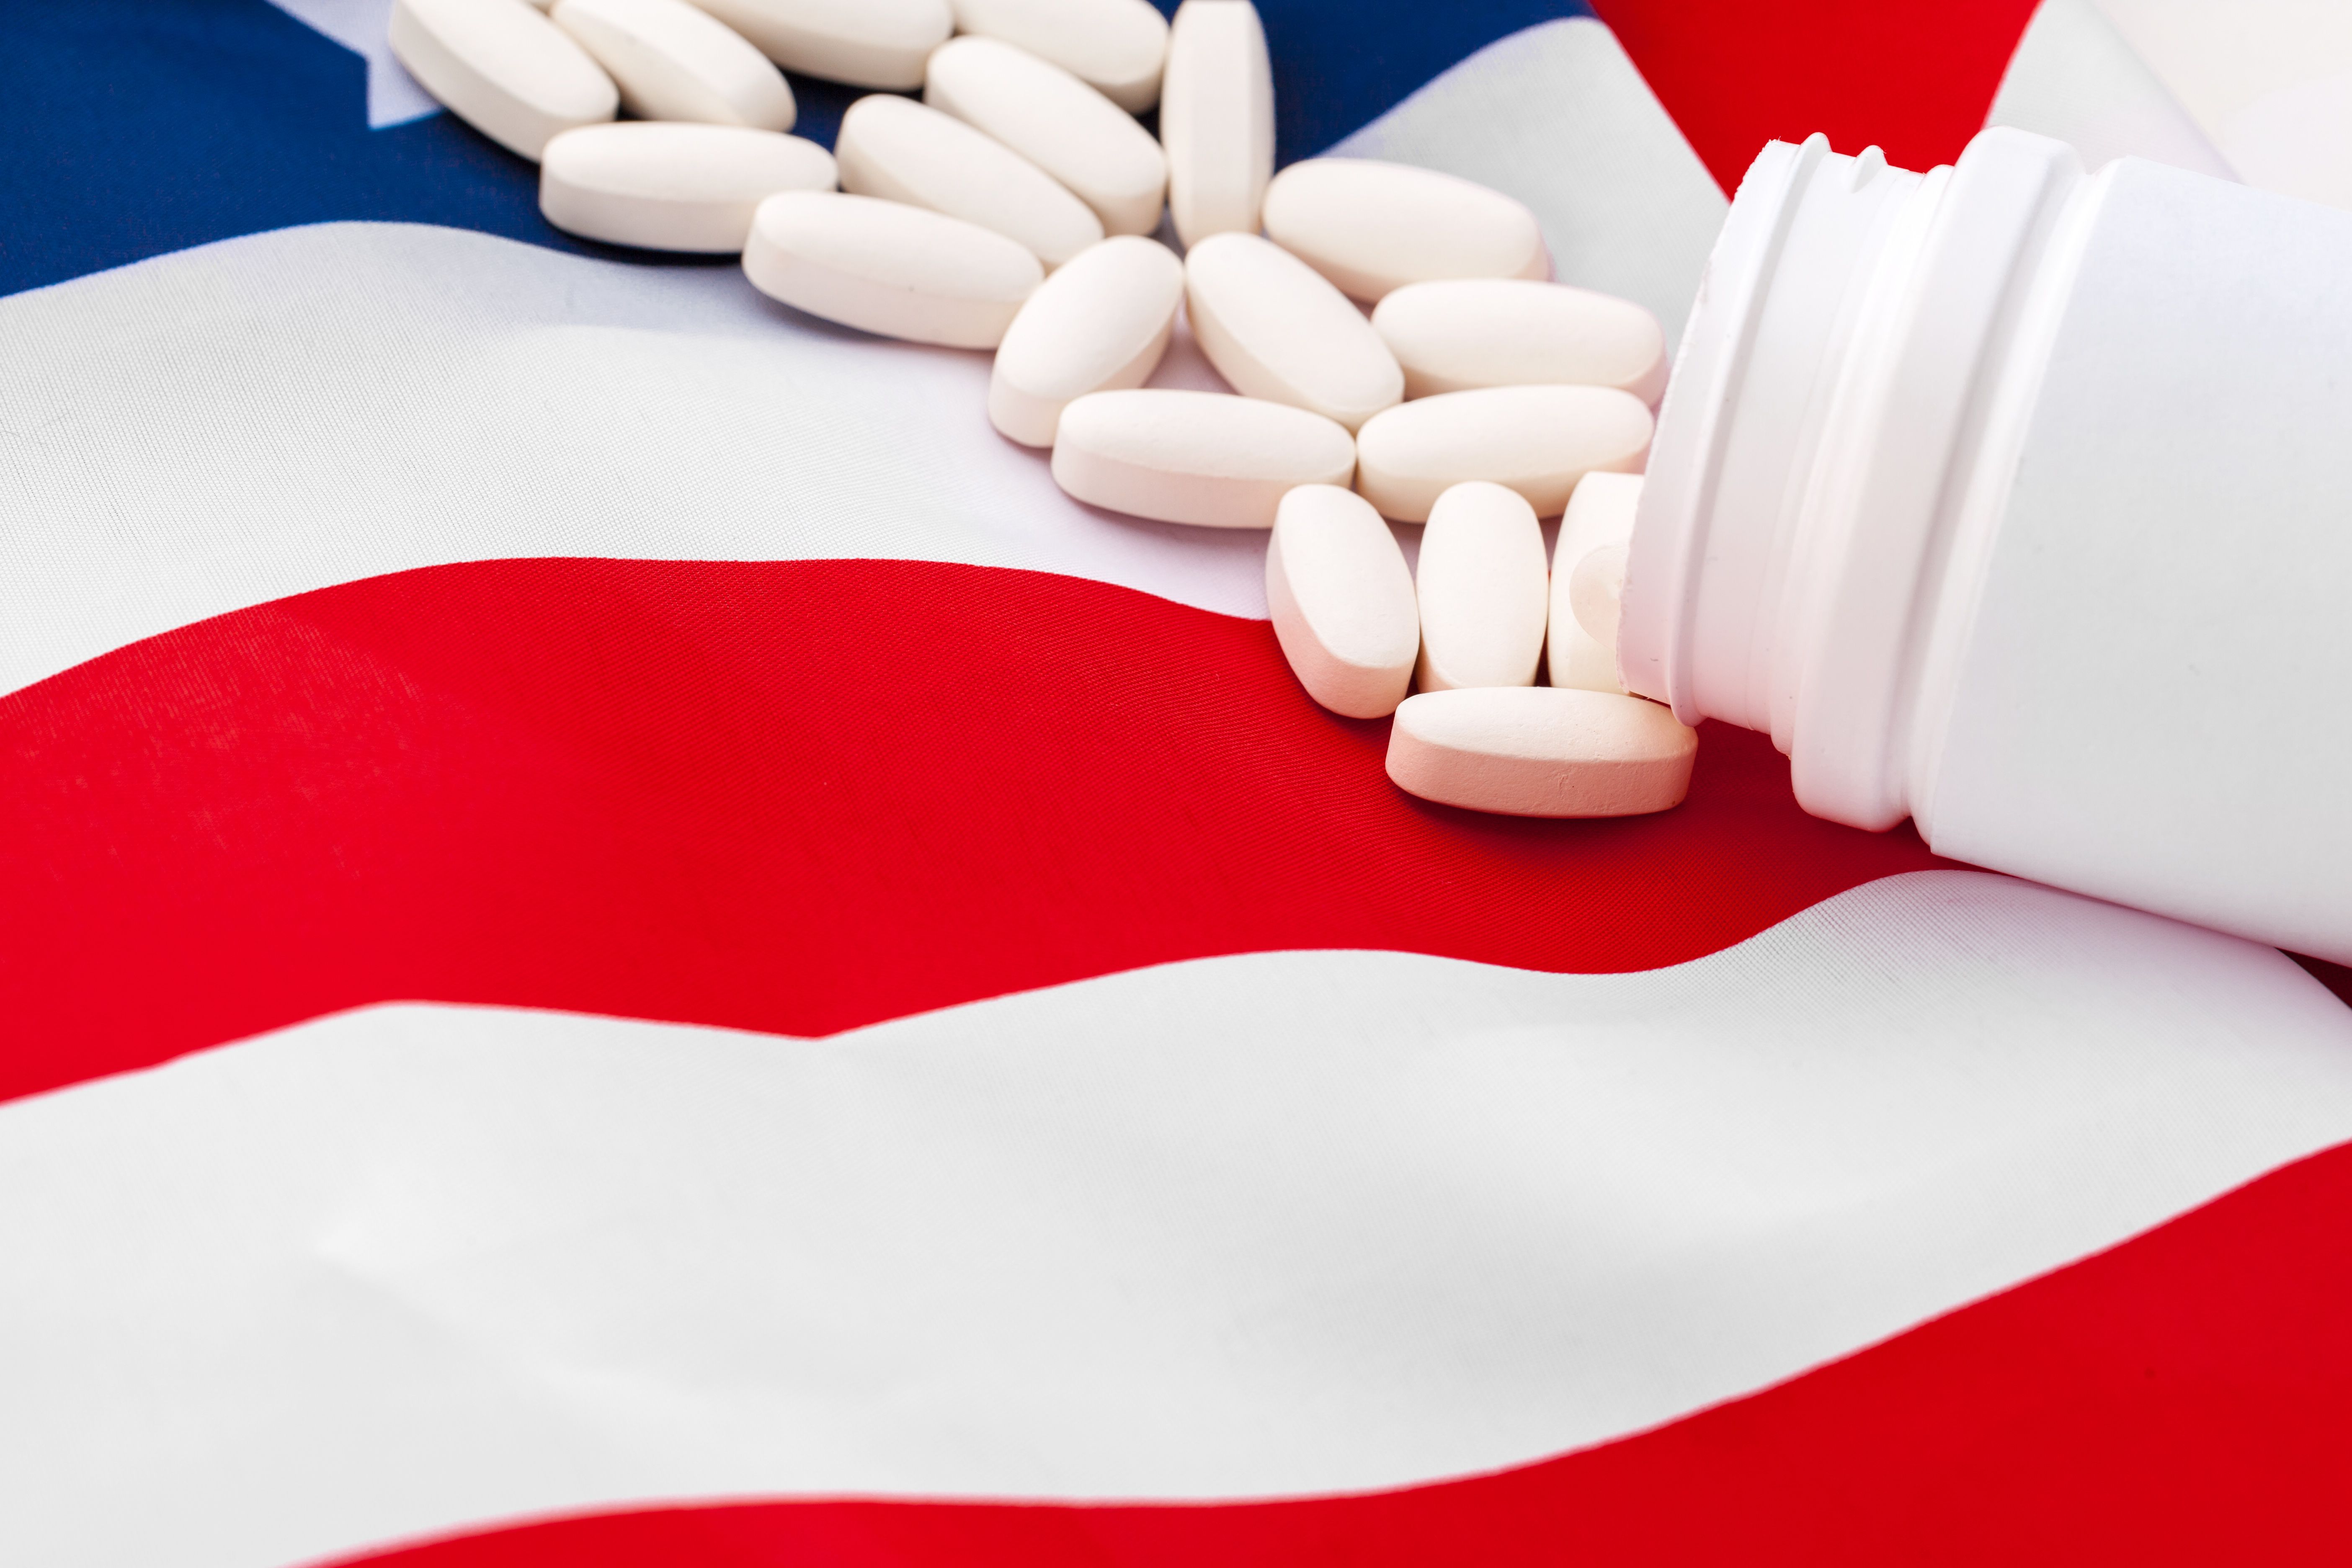 White Prescription Pills On United States Flag 2022 02 05 01 52 48 Utc